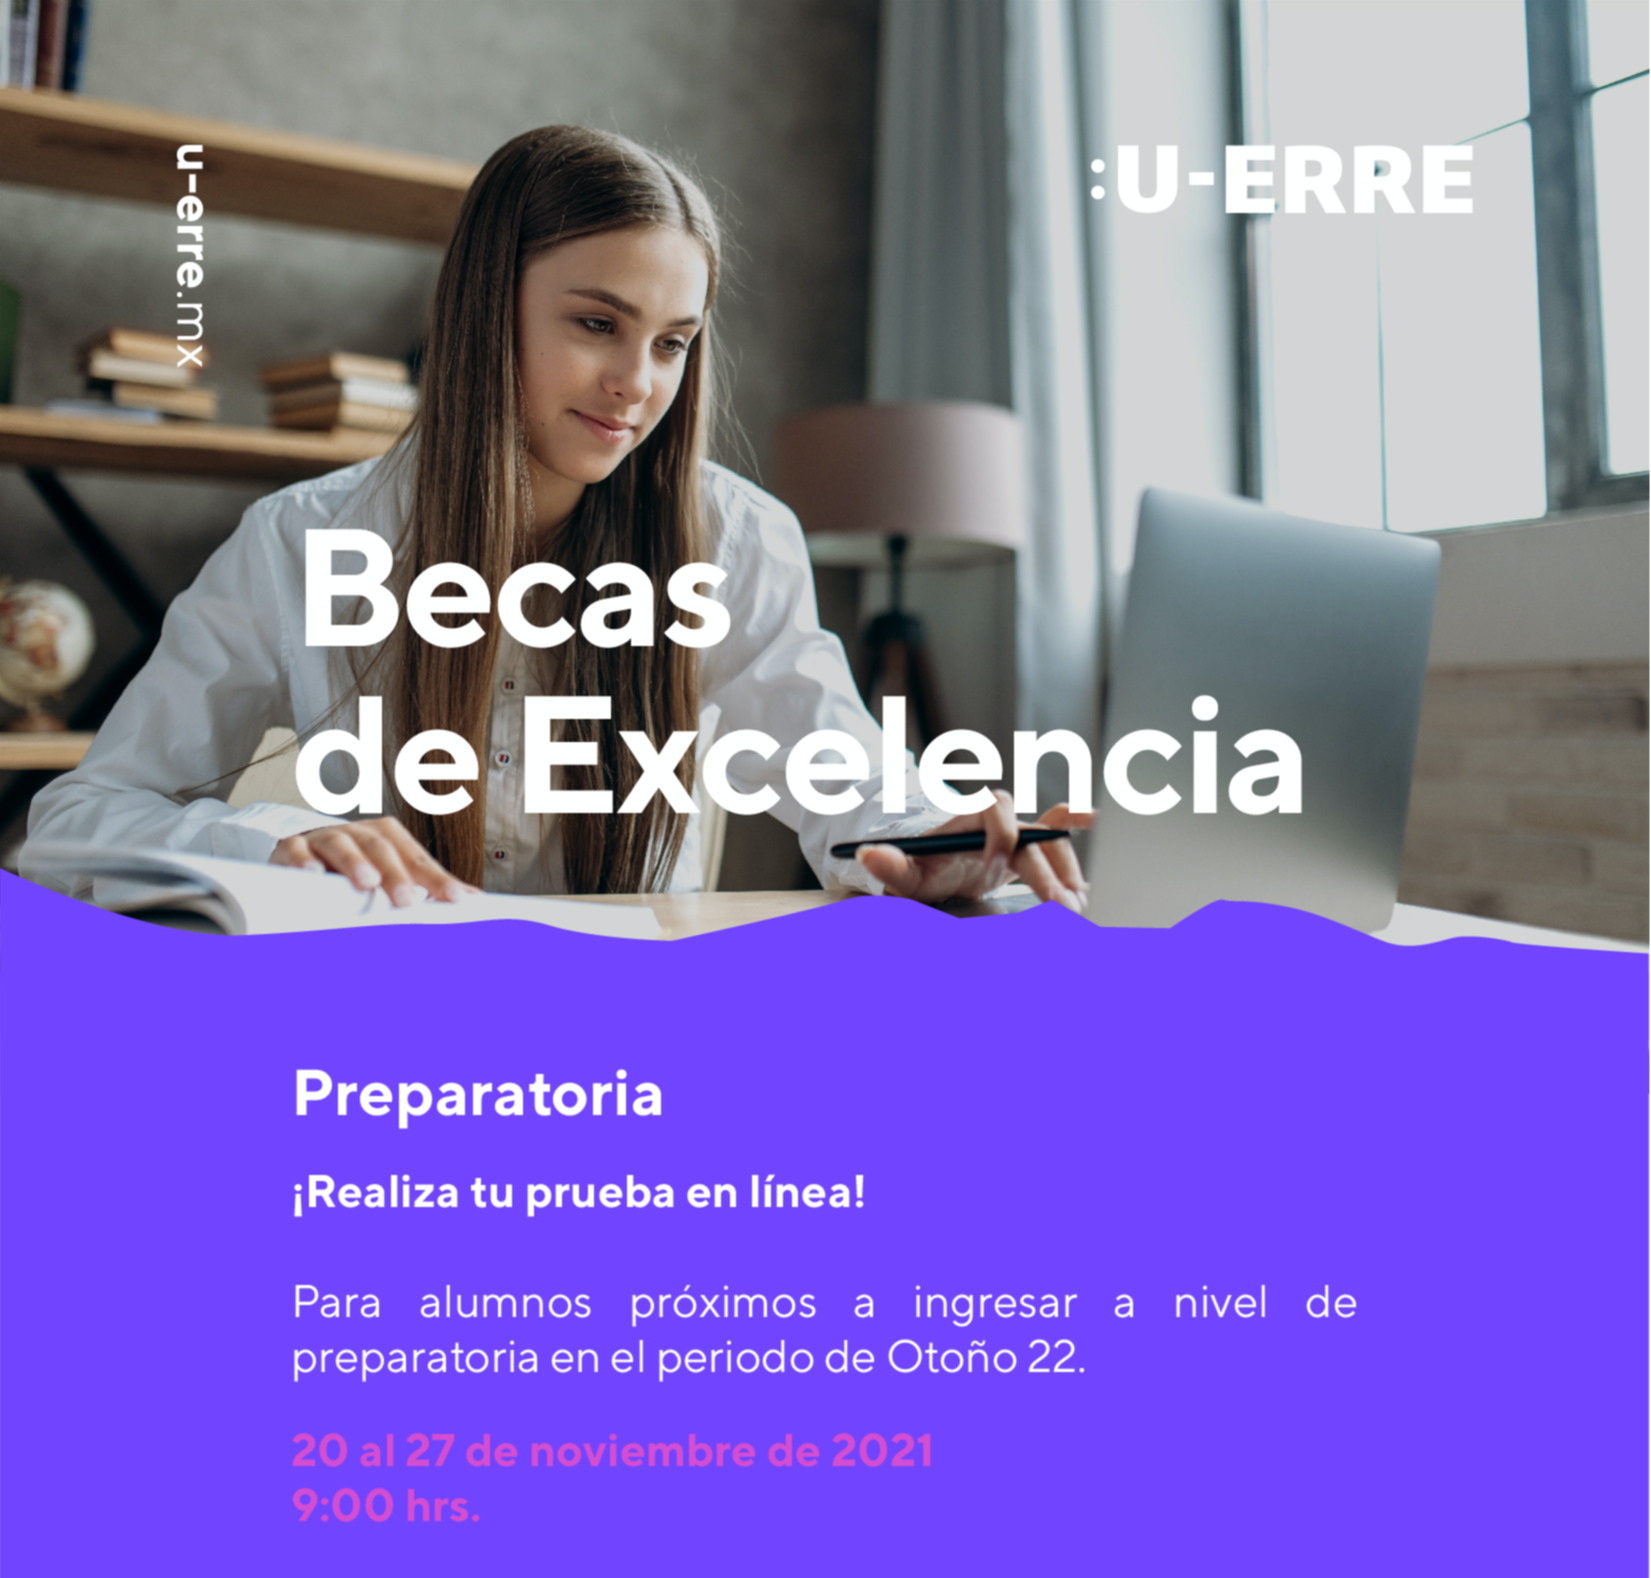 UERRE Becas de Excelencia 2021 PRUEBA PREPA_MAILING-1-1